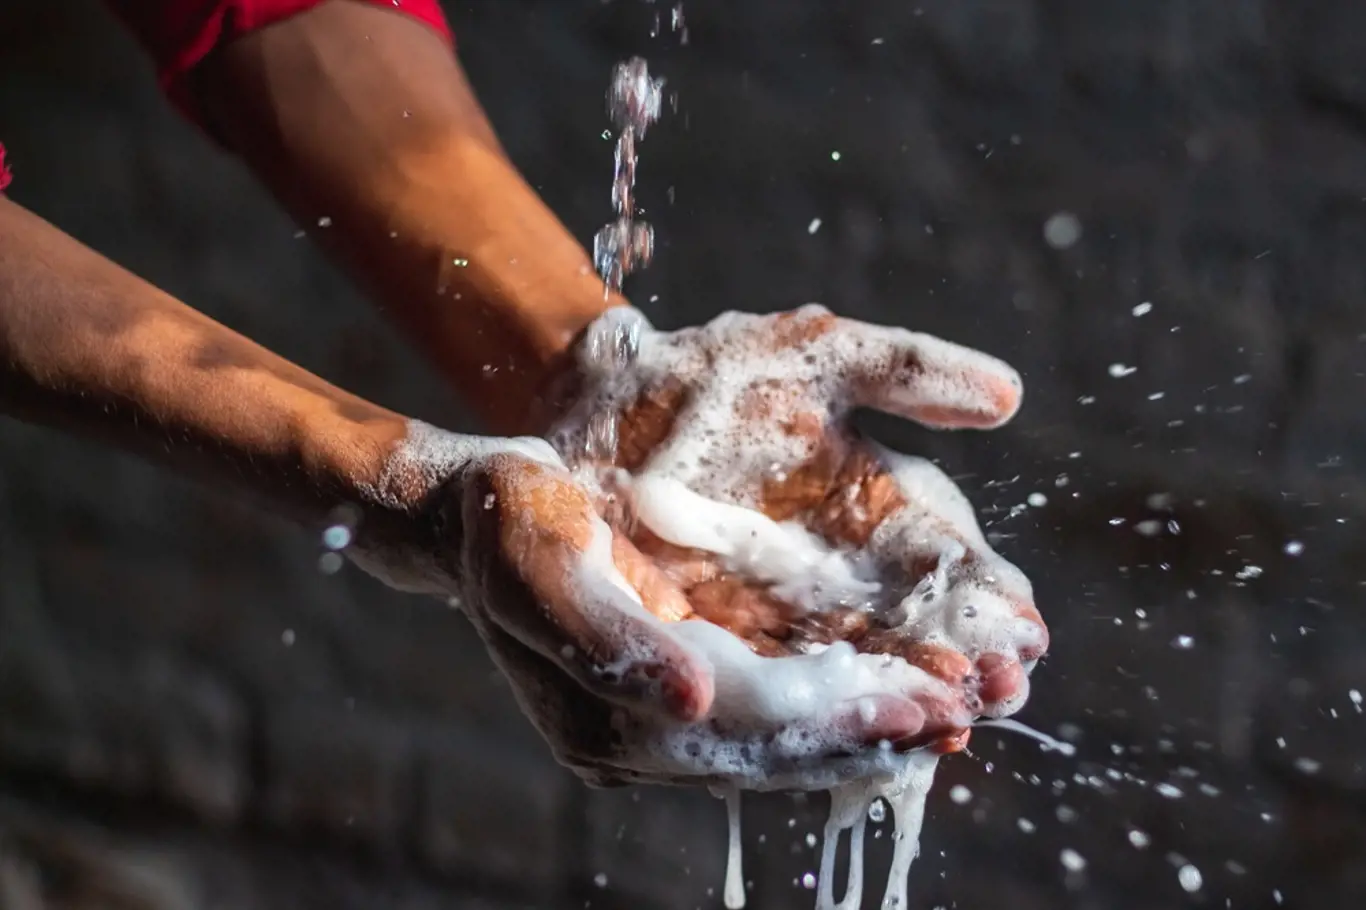 Pečlivé mytí rukou mýdlem a teplou vodou je zásadní